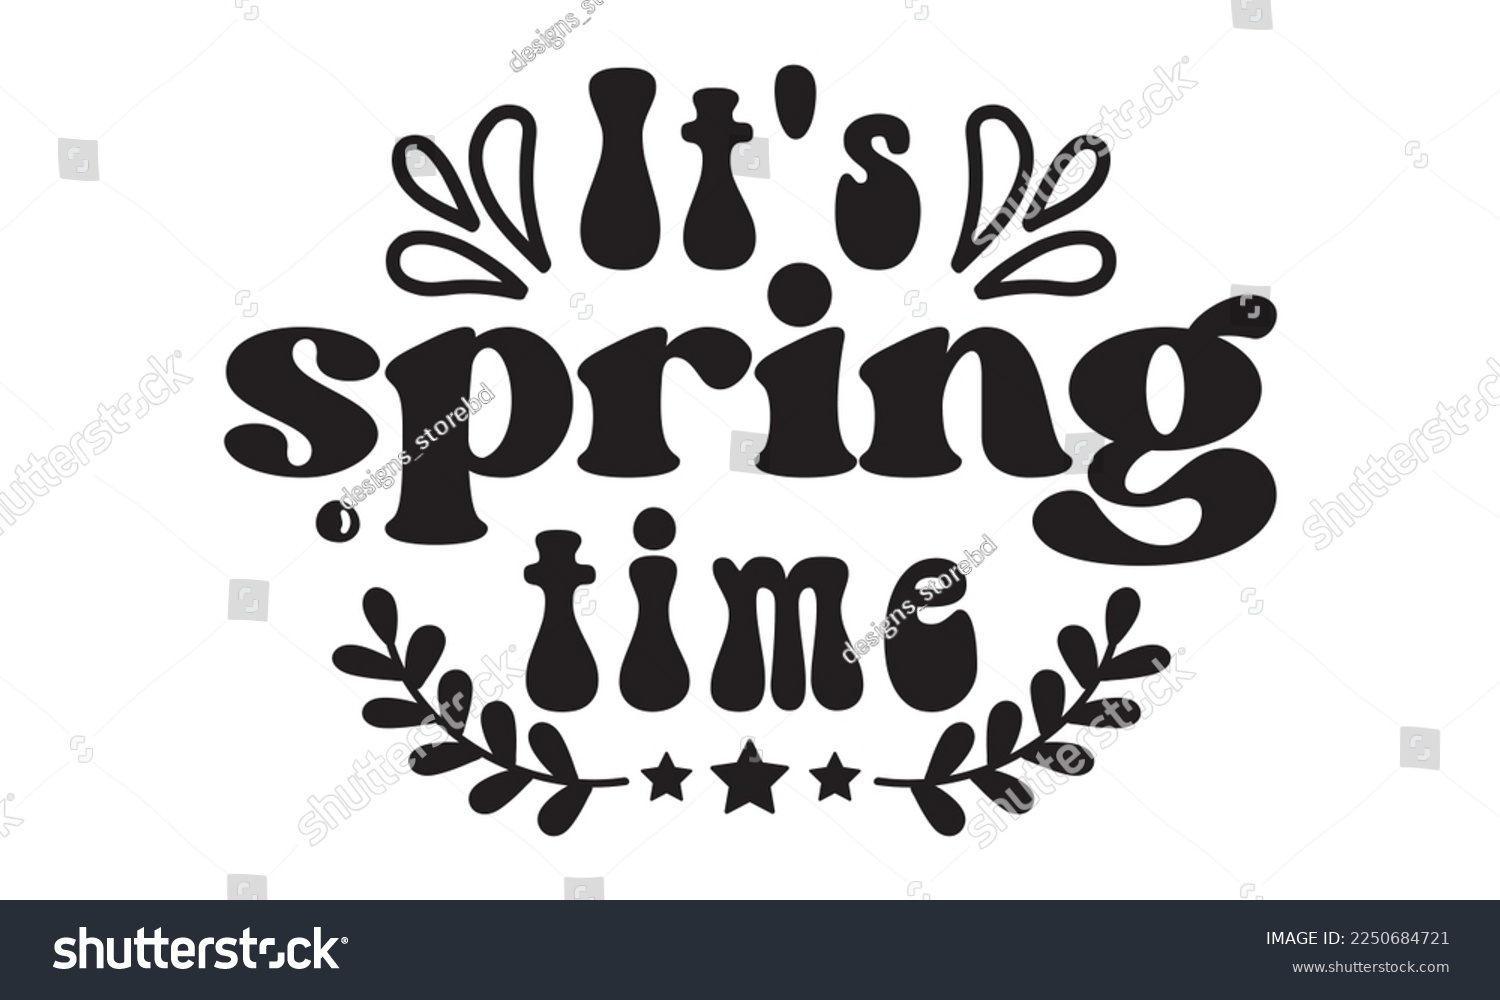 SVG of It's spring time svg, Easter svg, Happy Easter svg design, Easter Cut File, Hoppy t shirt, Bunny and spring svg, Egg for Kids, Cut File Cricut svg